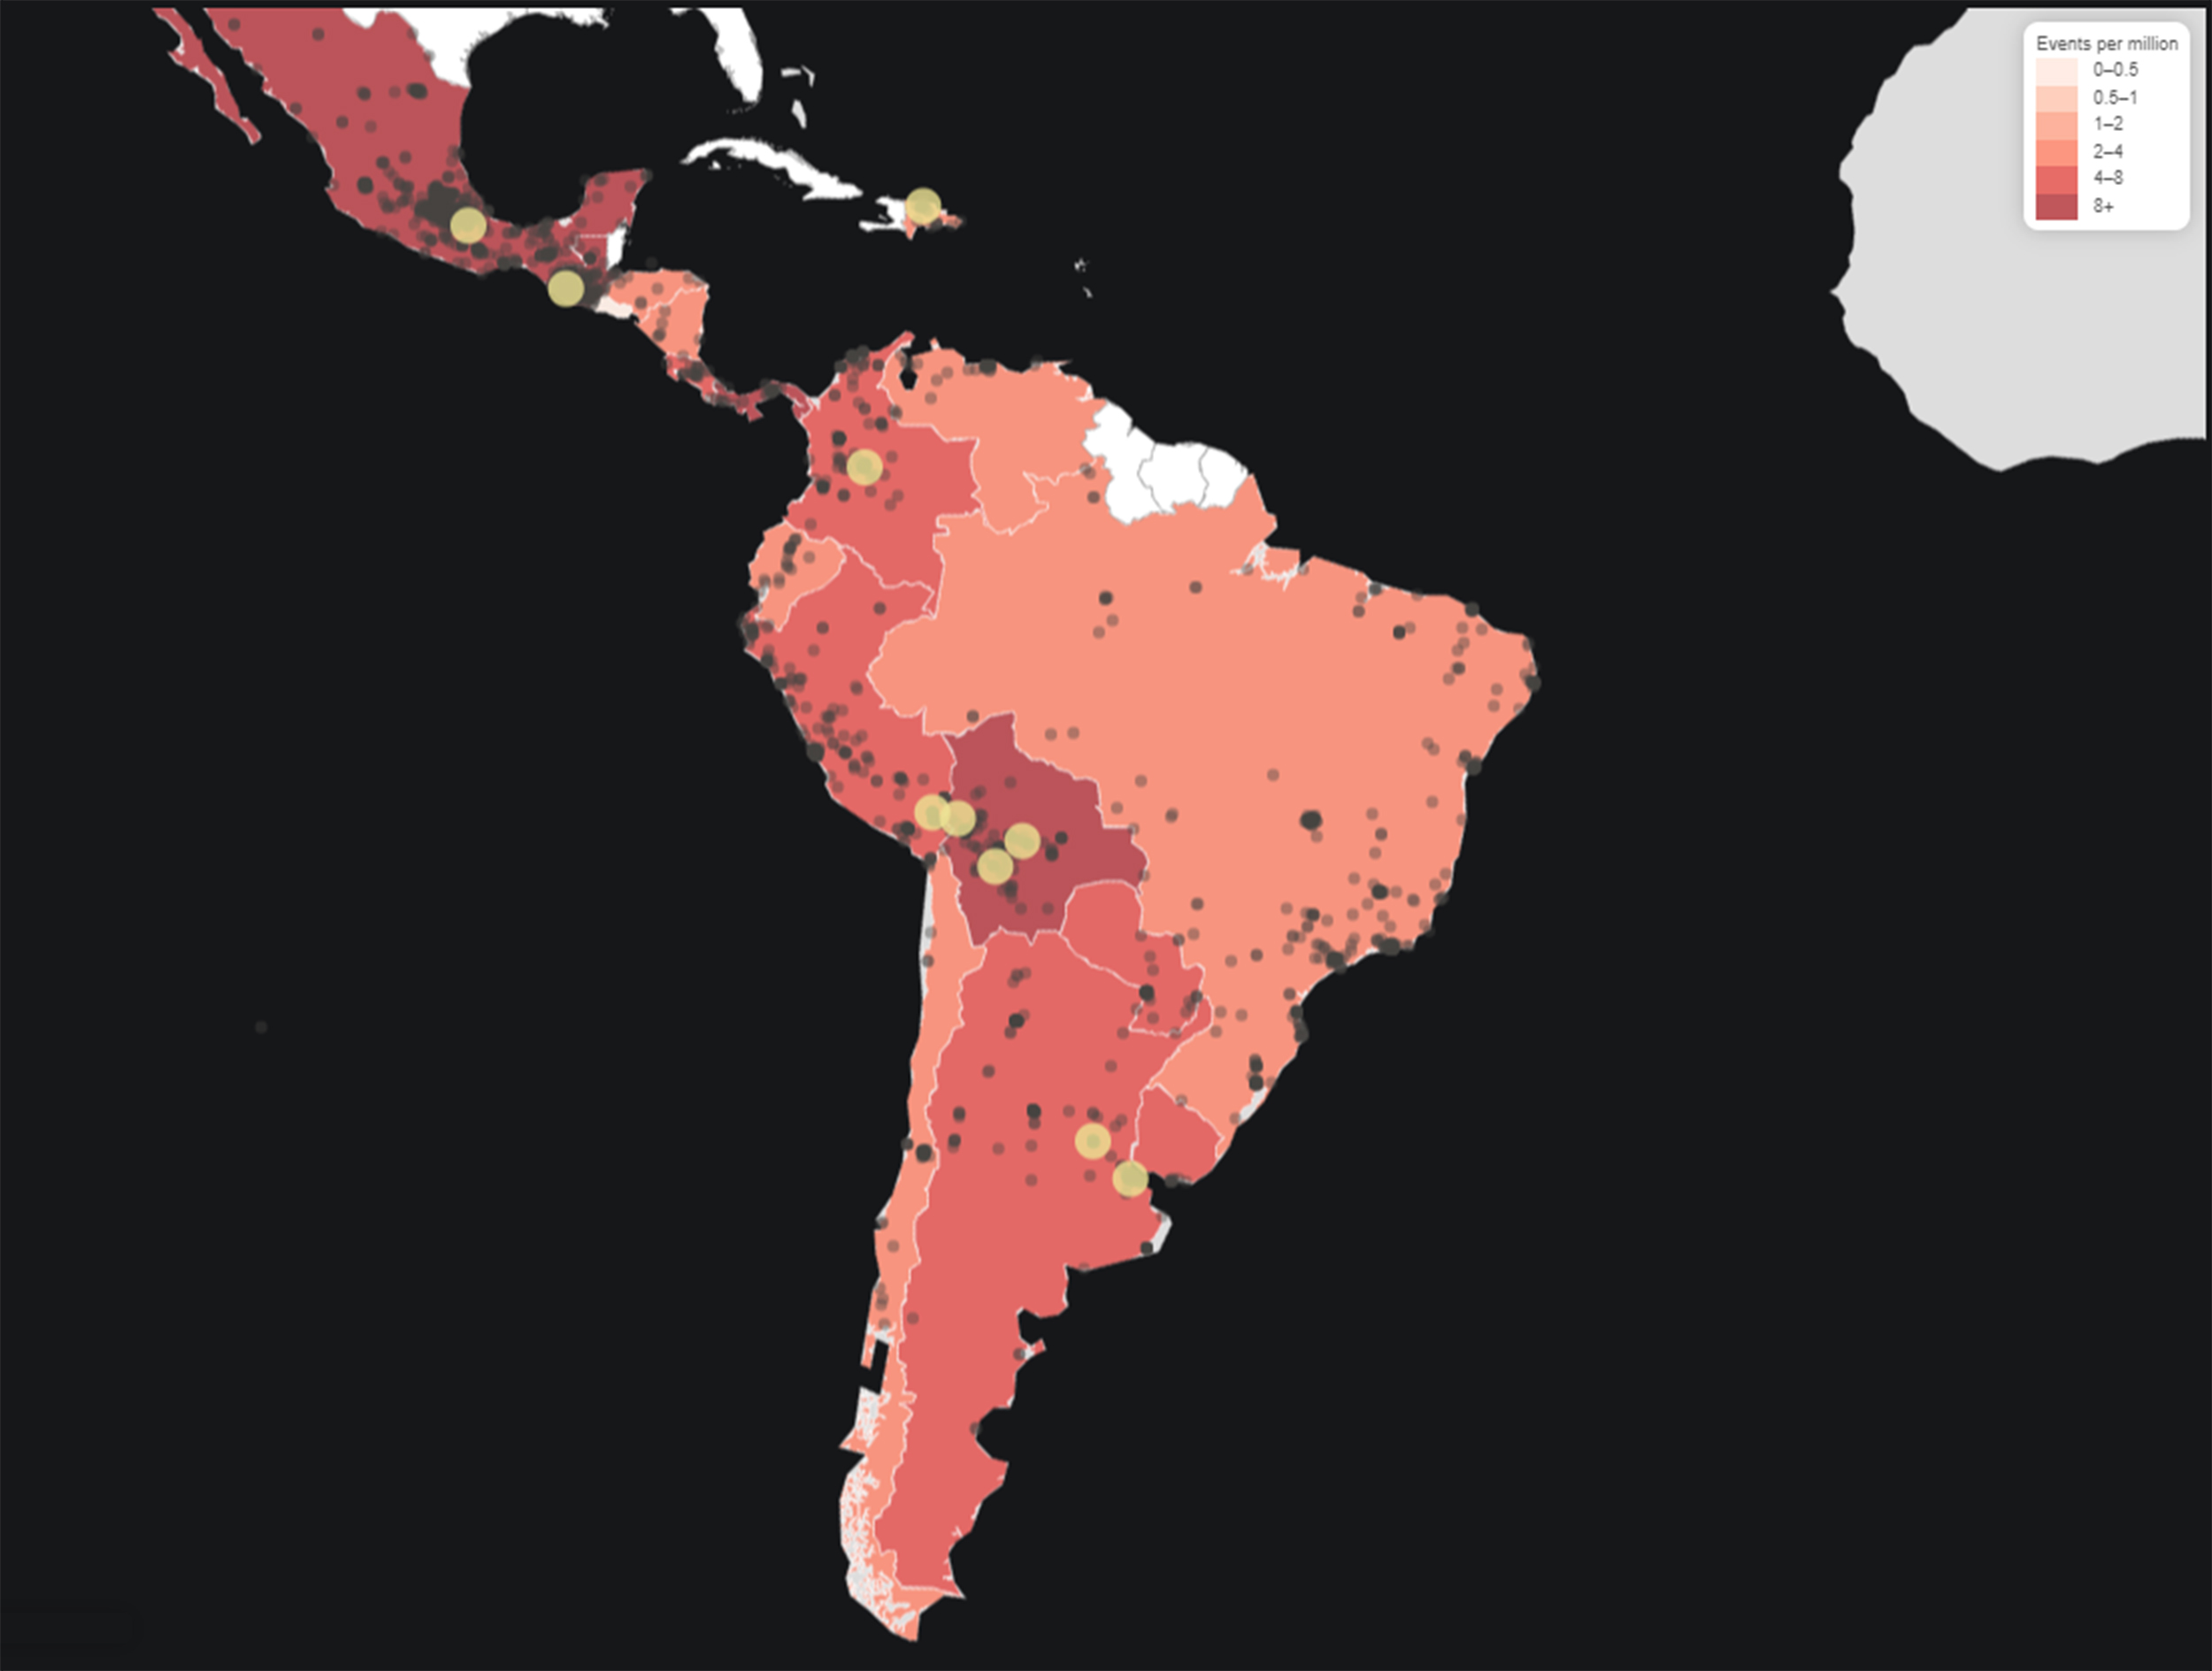 Vergrösserte Ansicht: Karte zeigt Südamerikanische Staaten, welche mehr oder weniger rot eingefärbt sind. 